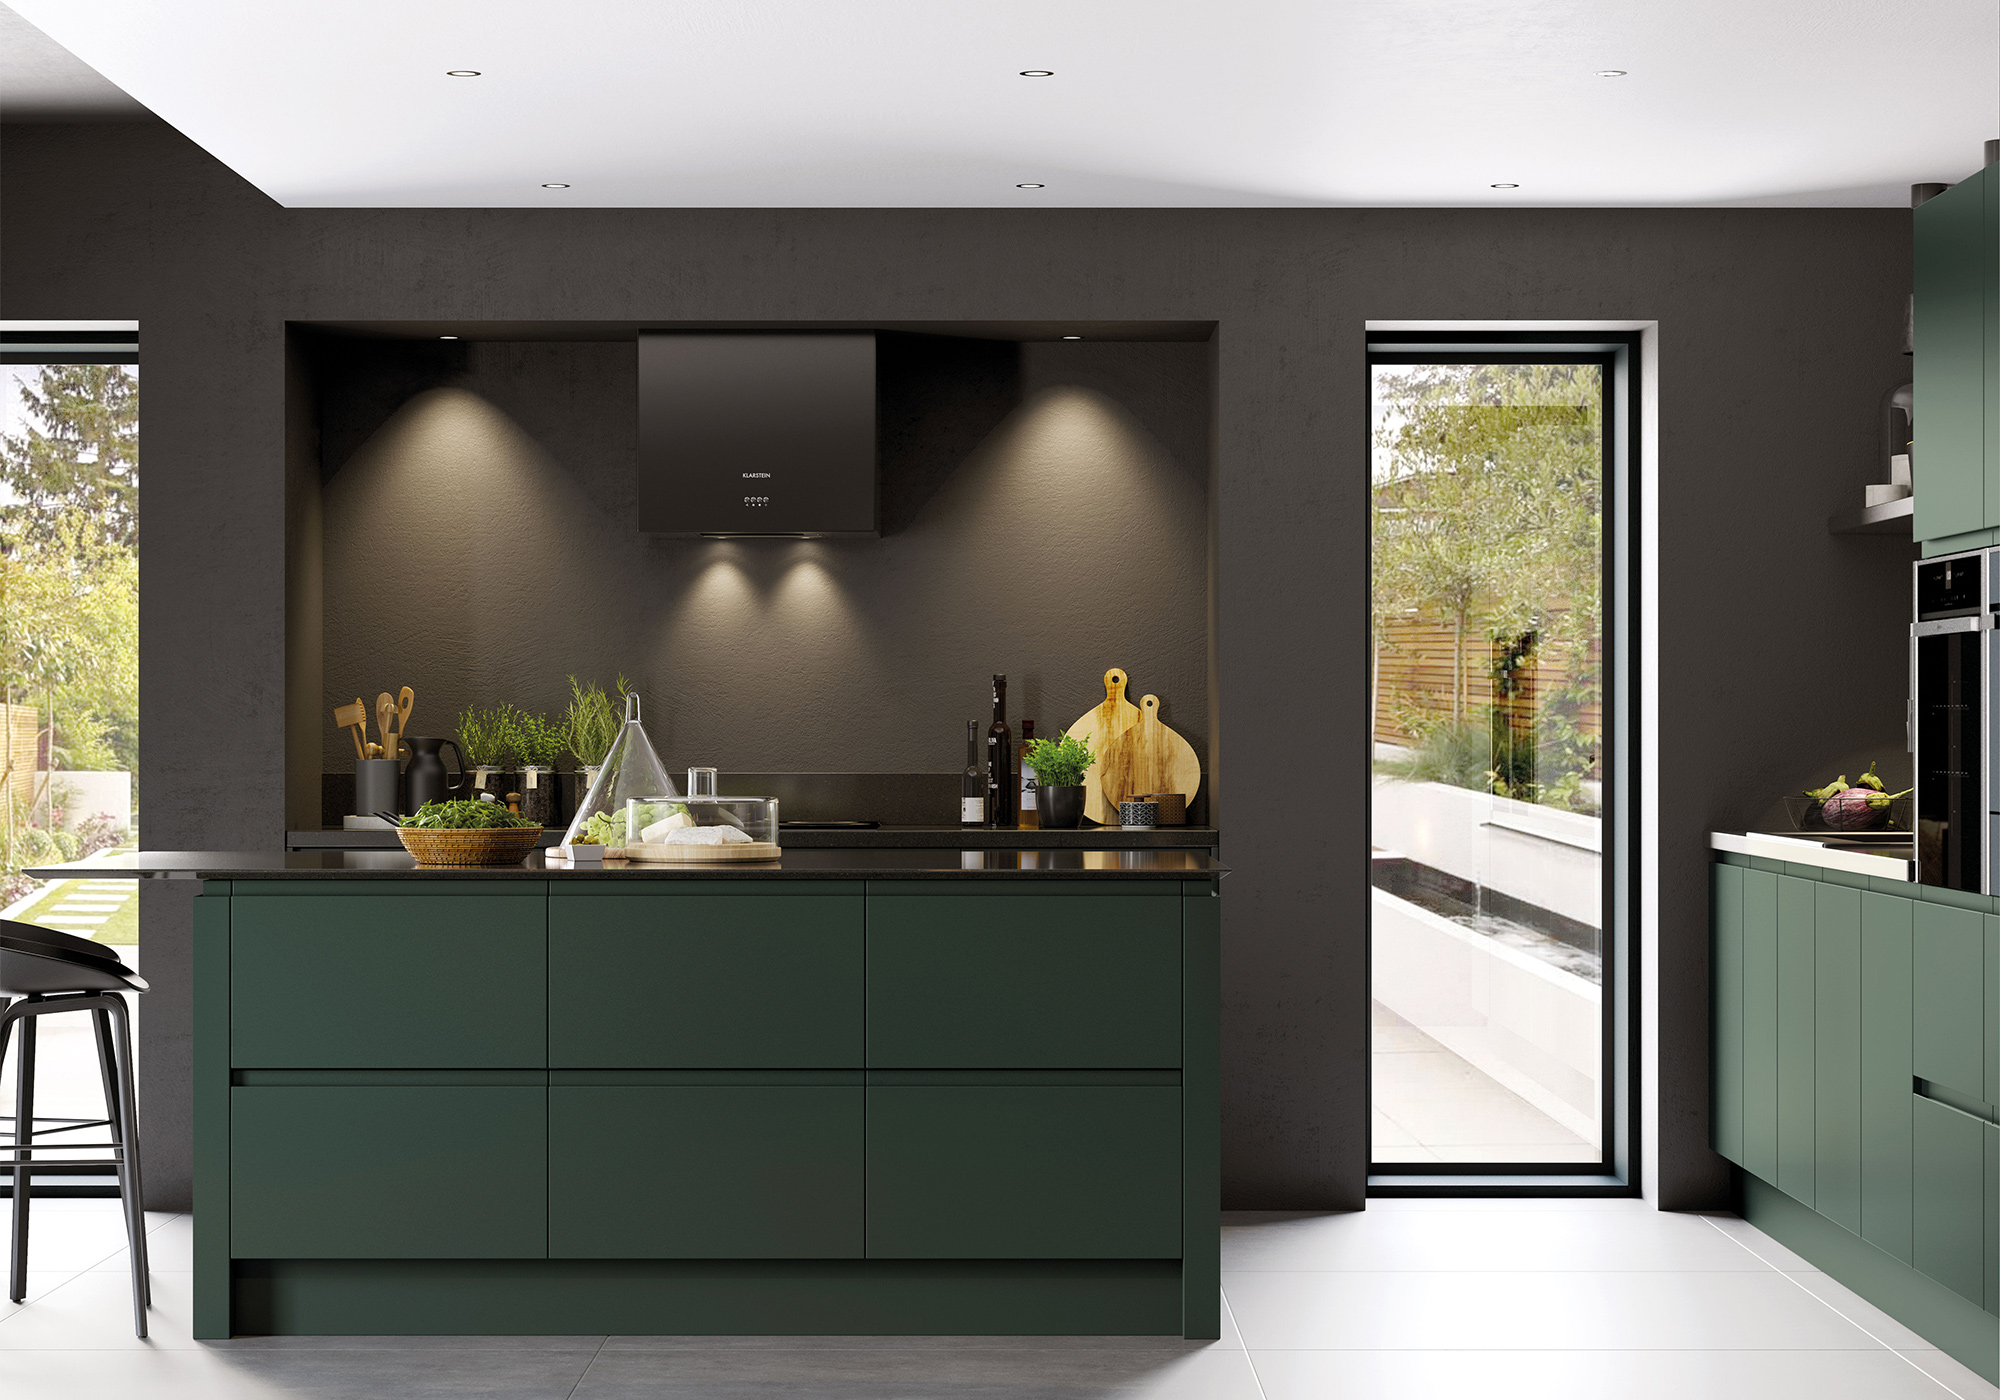 Derry Home Exterior Budget Kitchen Remodel Luxury Kitchens Modern Kitchen Design